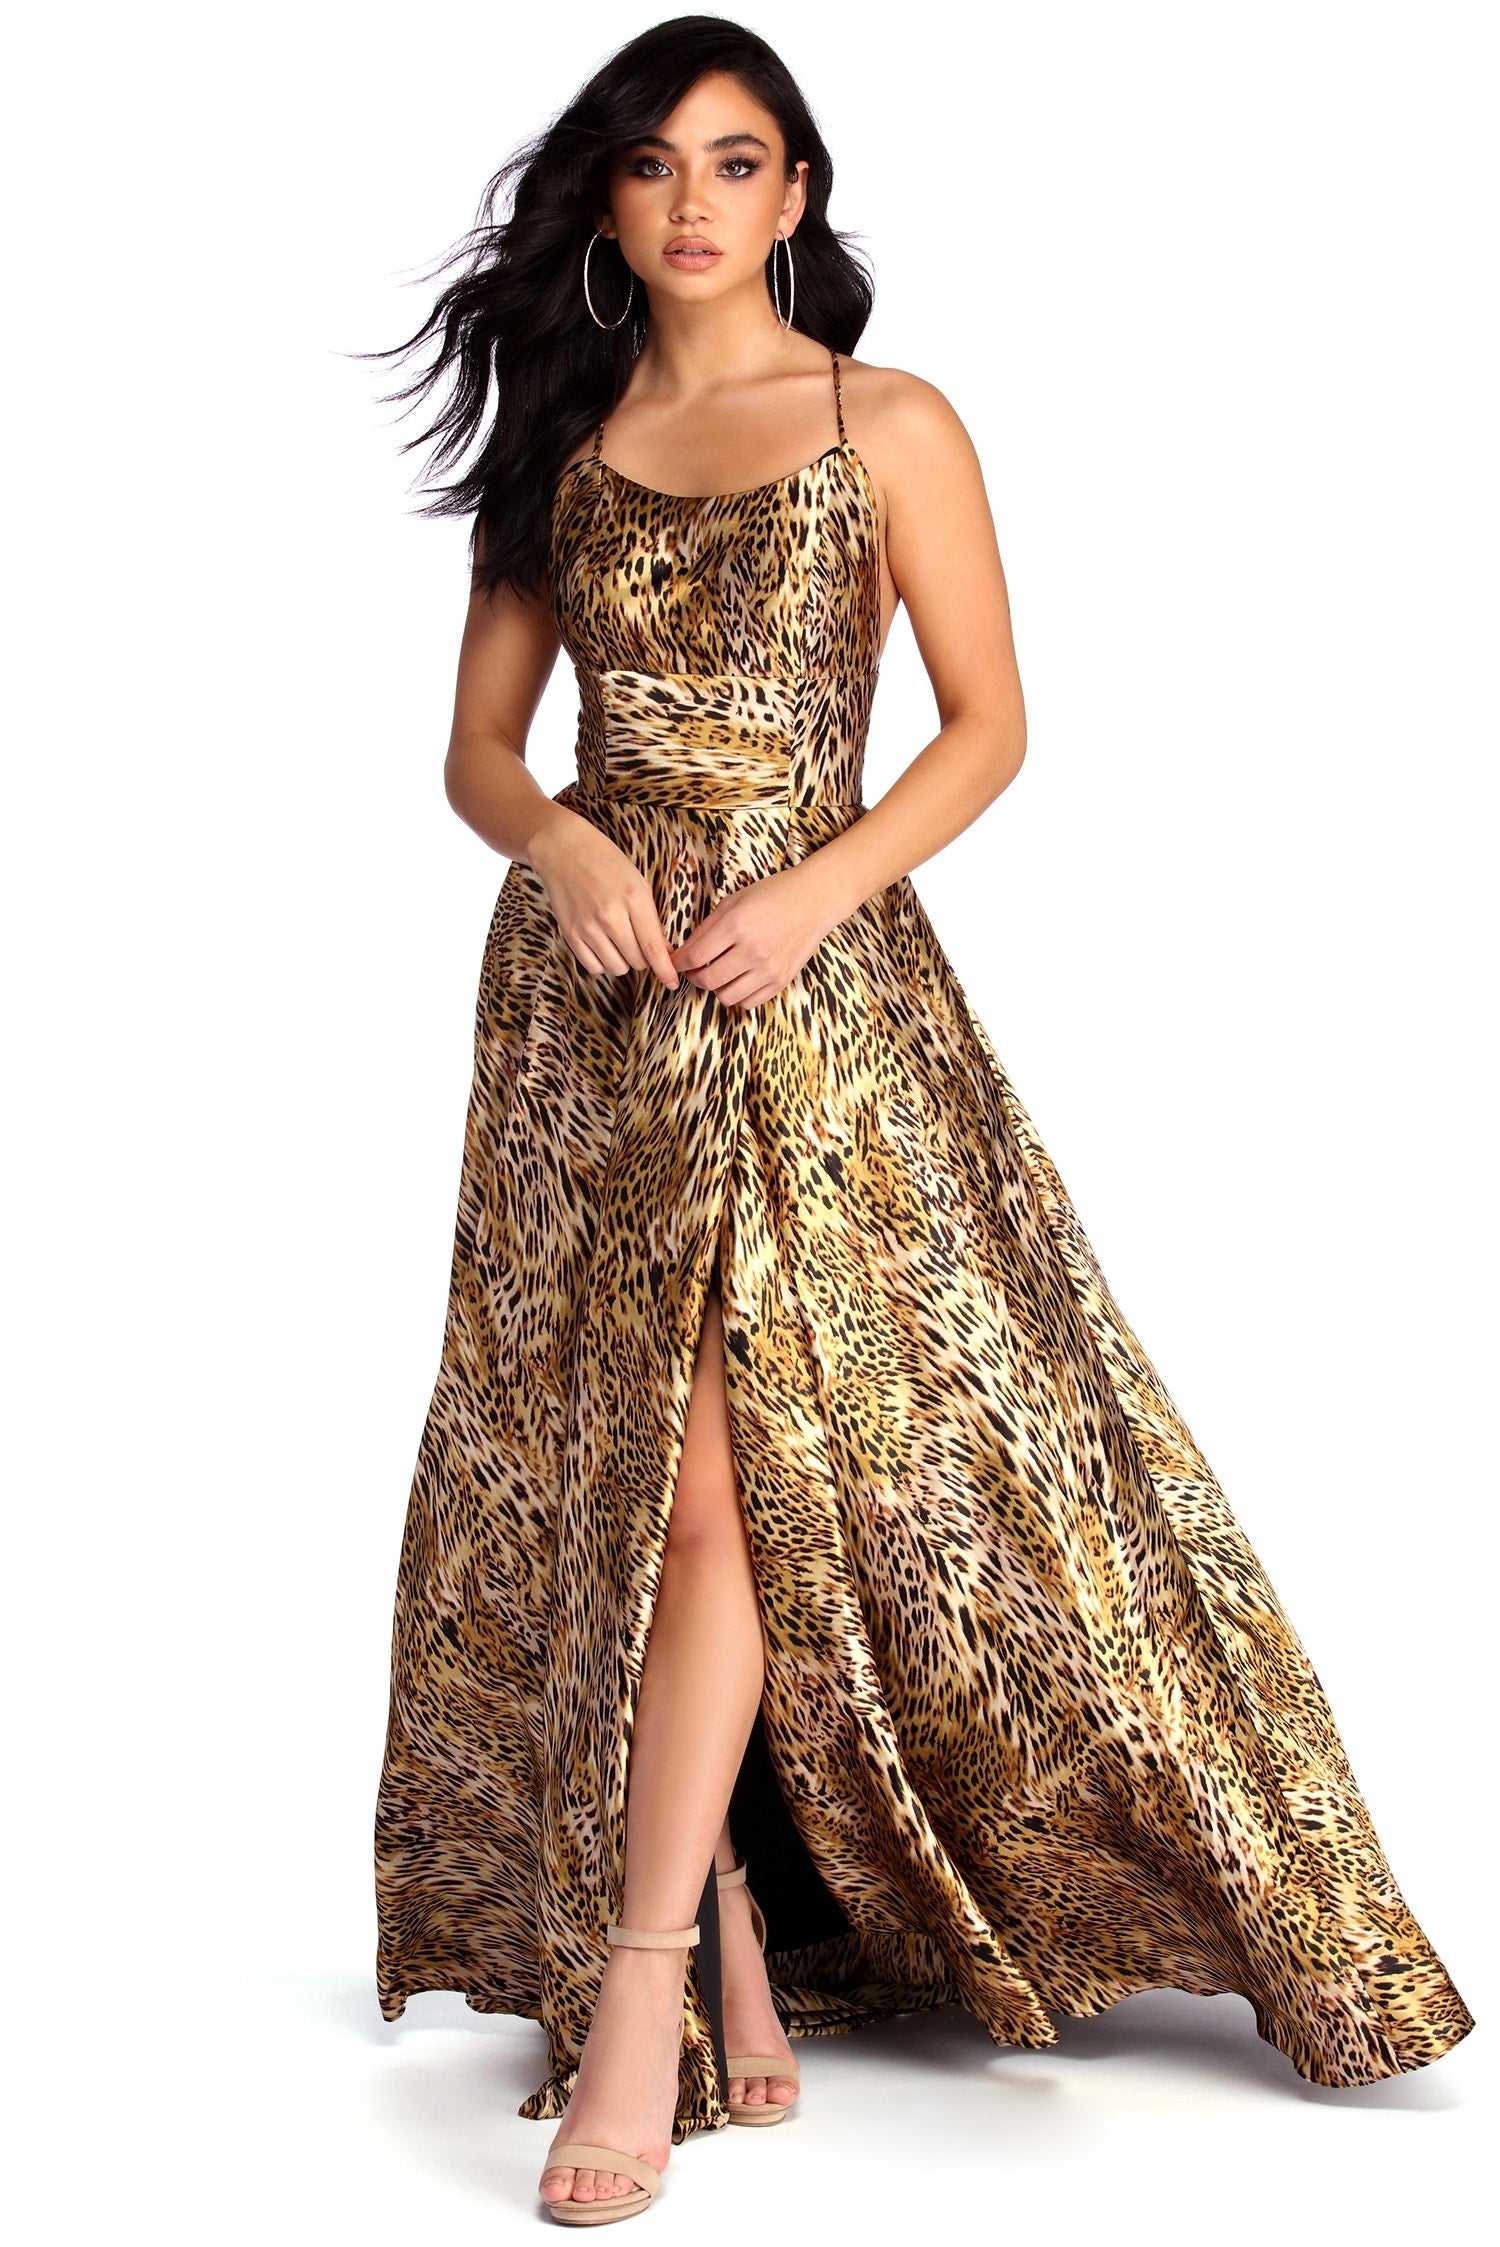 leopard print formal dress